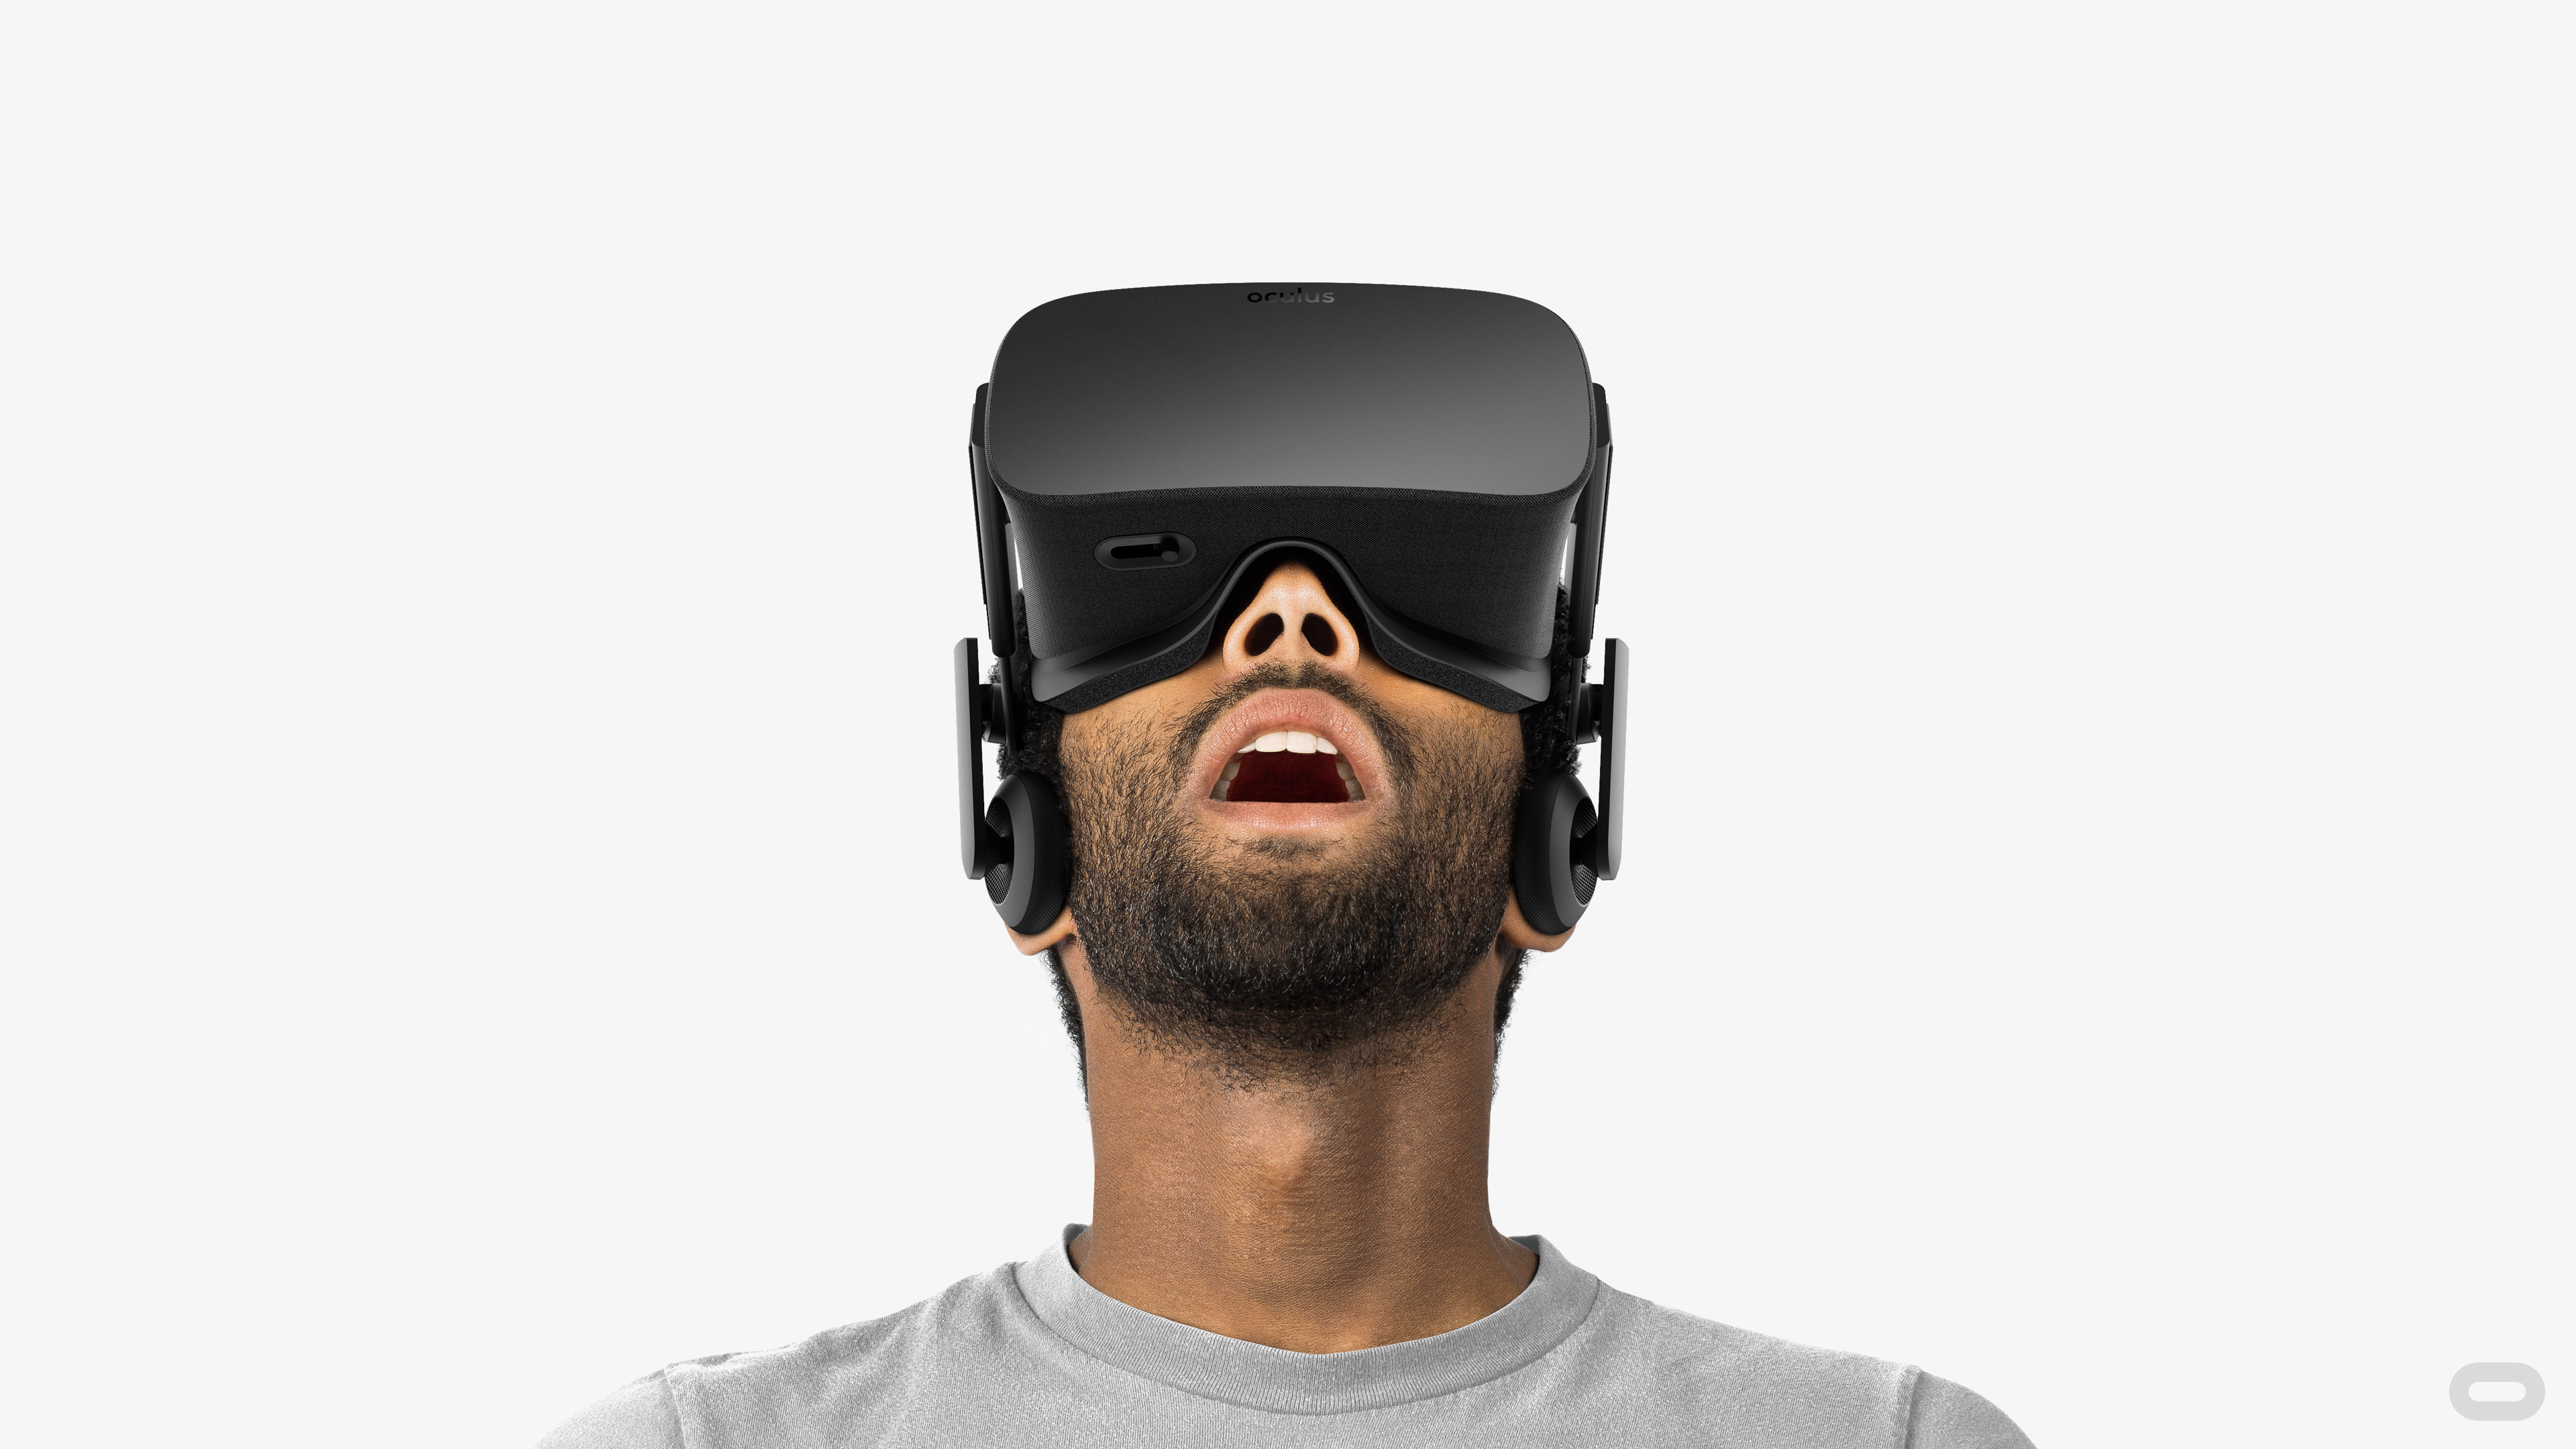 ZeniMax mener at de eier teknologien bak Oculus Rift.